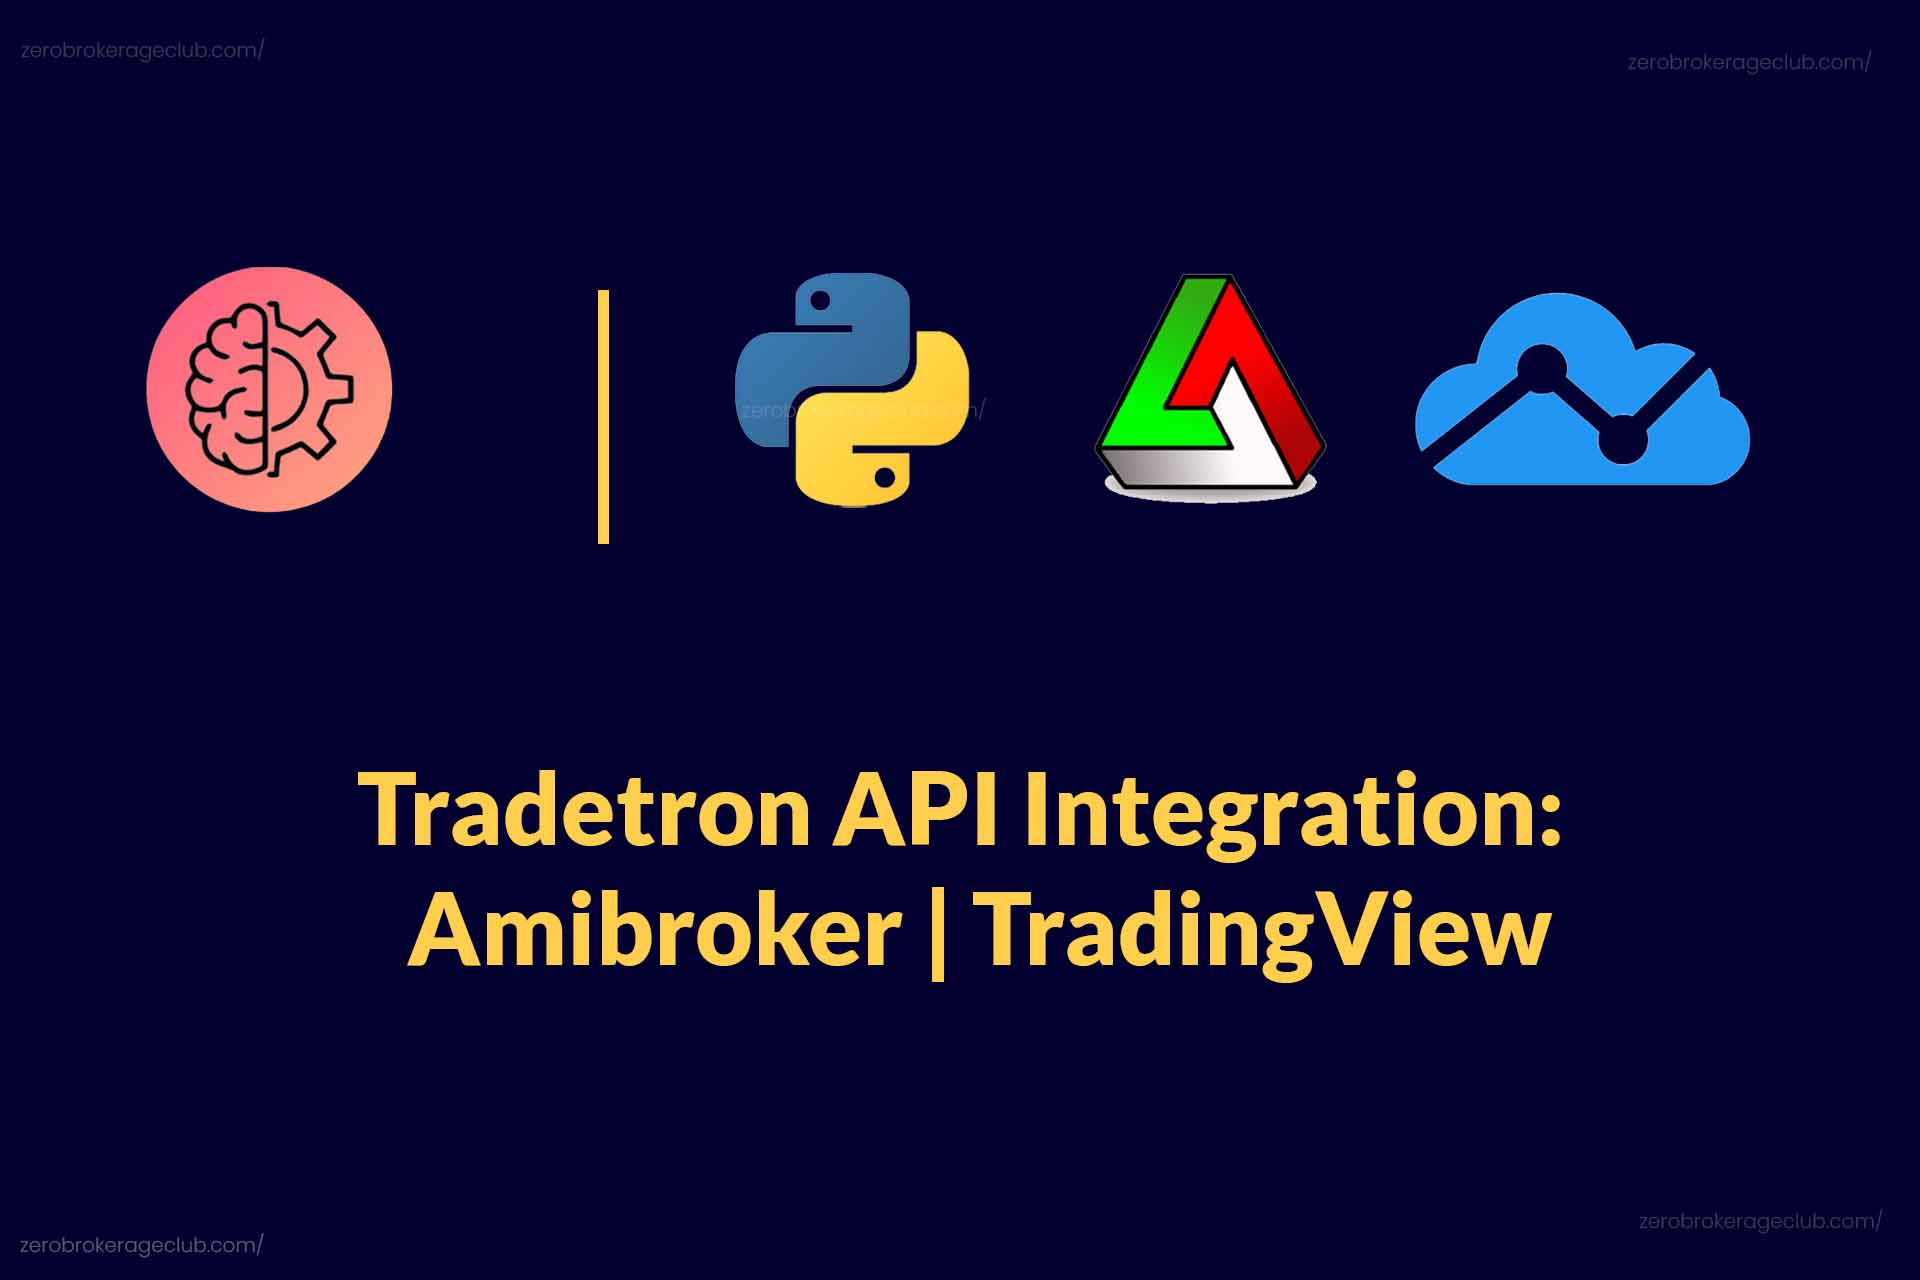 Tradetron API Integration - Amibroker | TradingView